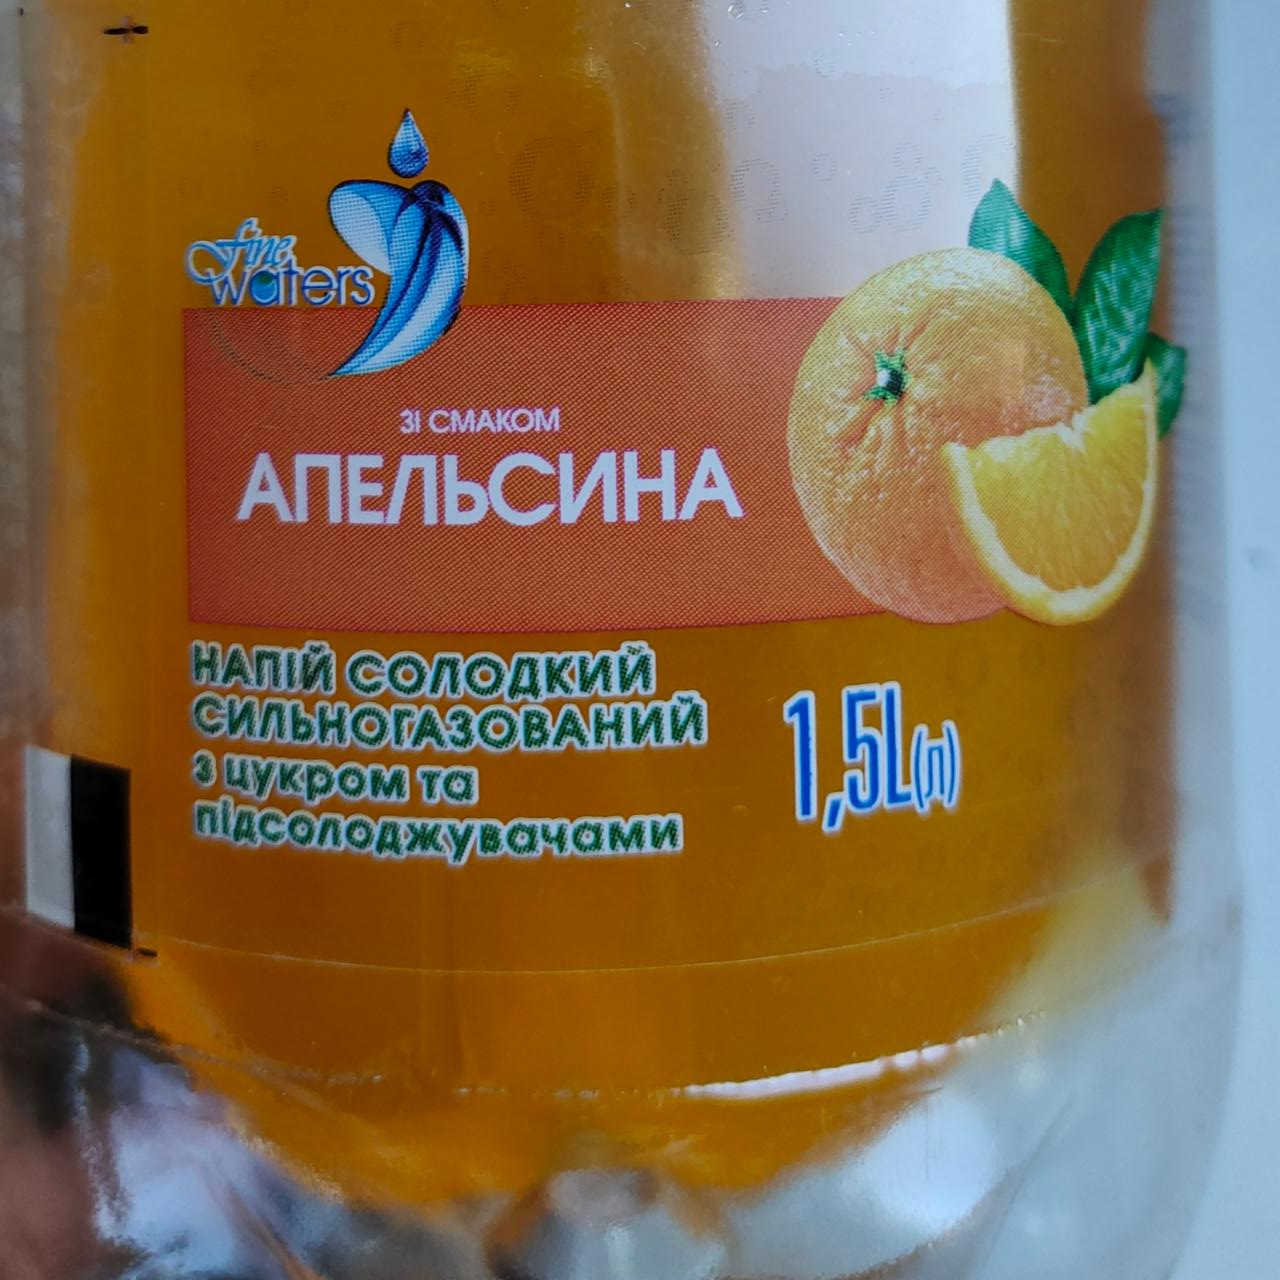 Фото - Напиток сладкий сильногазированный со вкусом апельсина Fine Waters